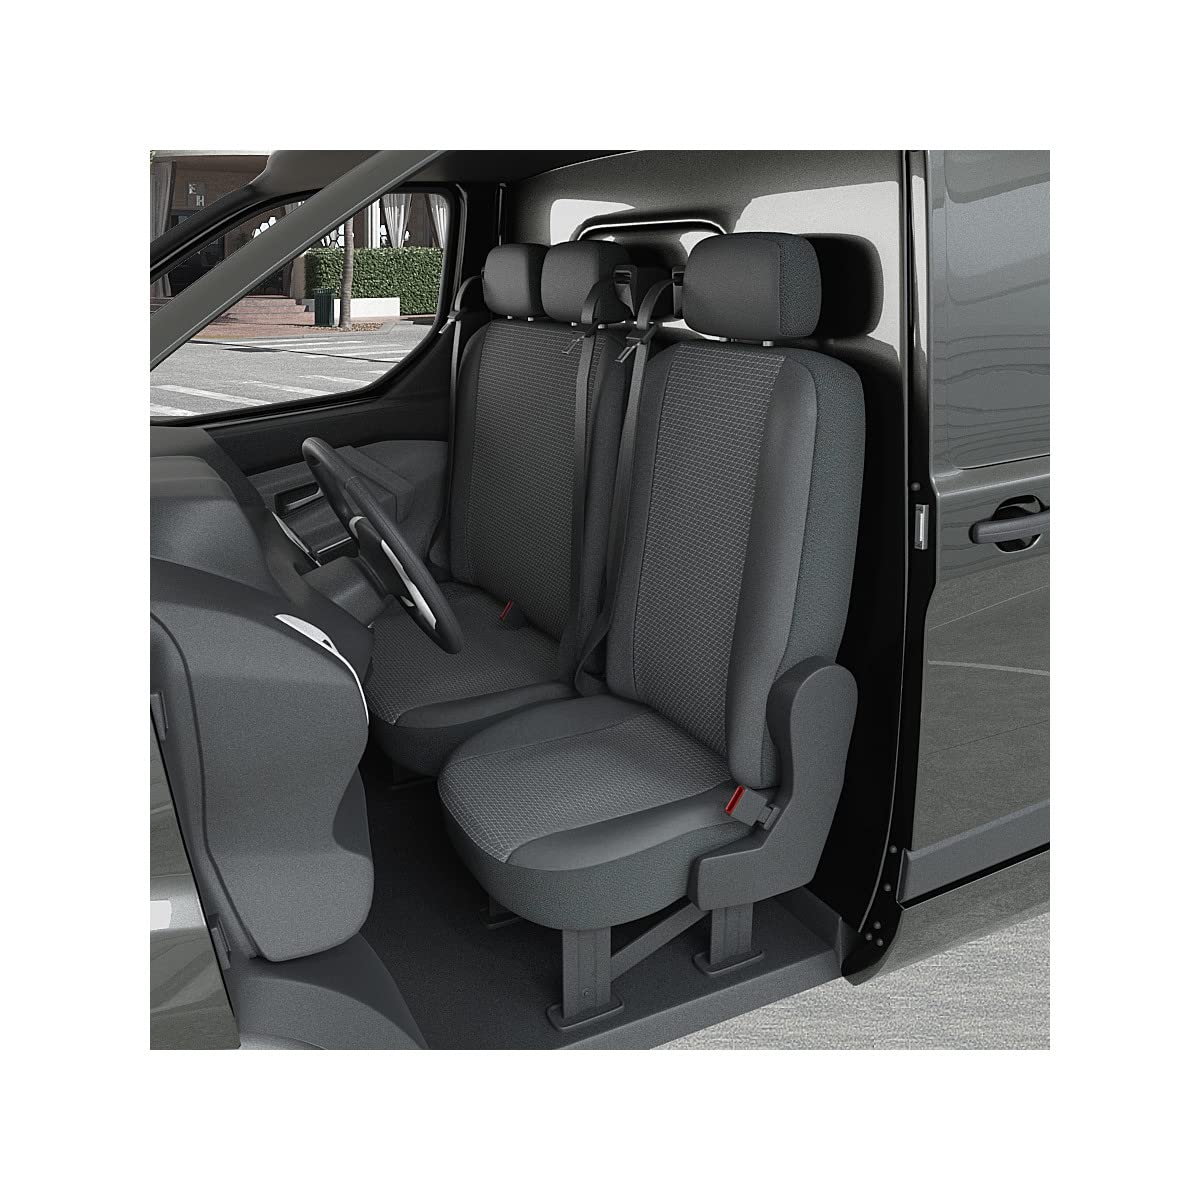 DBS 1013171 Sitzbezug für Auto/Nutzfahrzeuge, Kunstleder, schnelle Montage, kompatibel mit Airbag-Isofix-1013171 von DBS